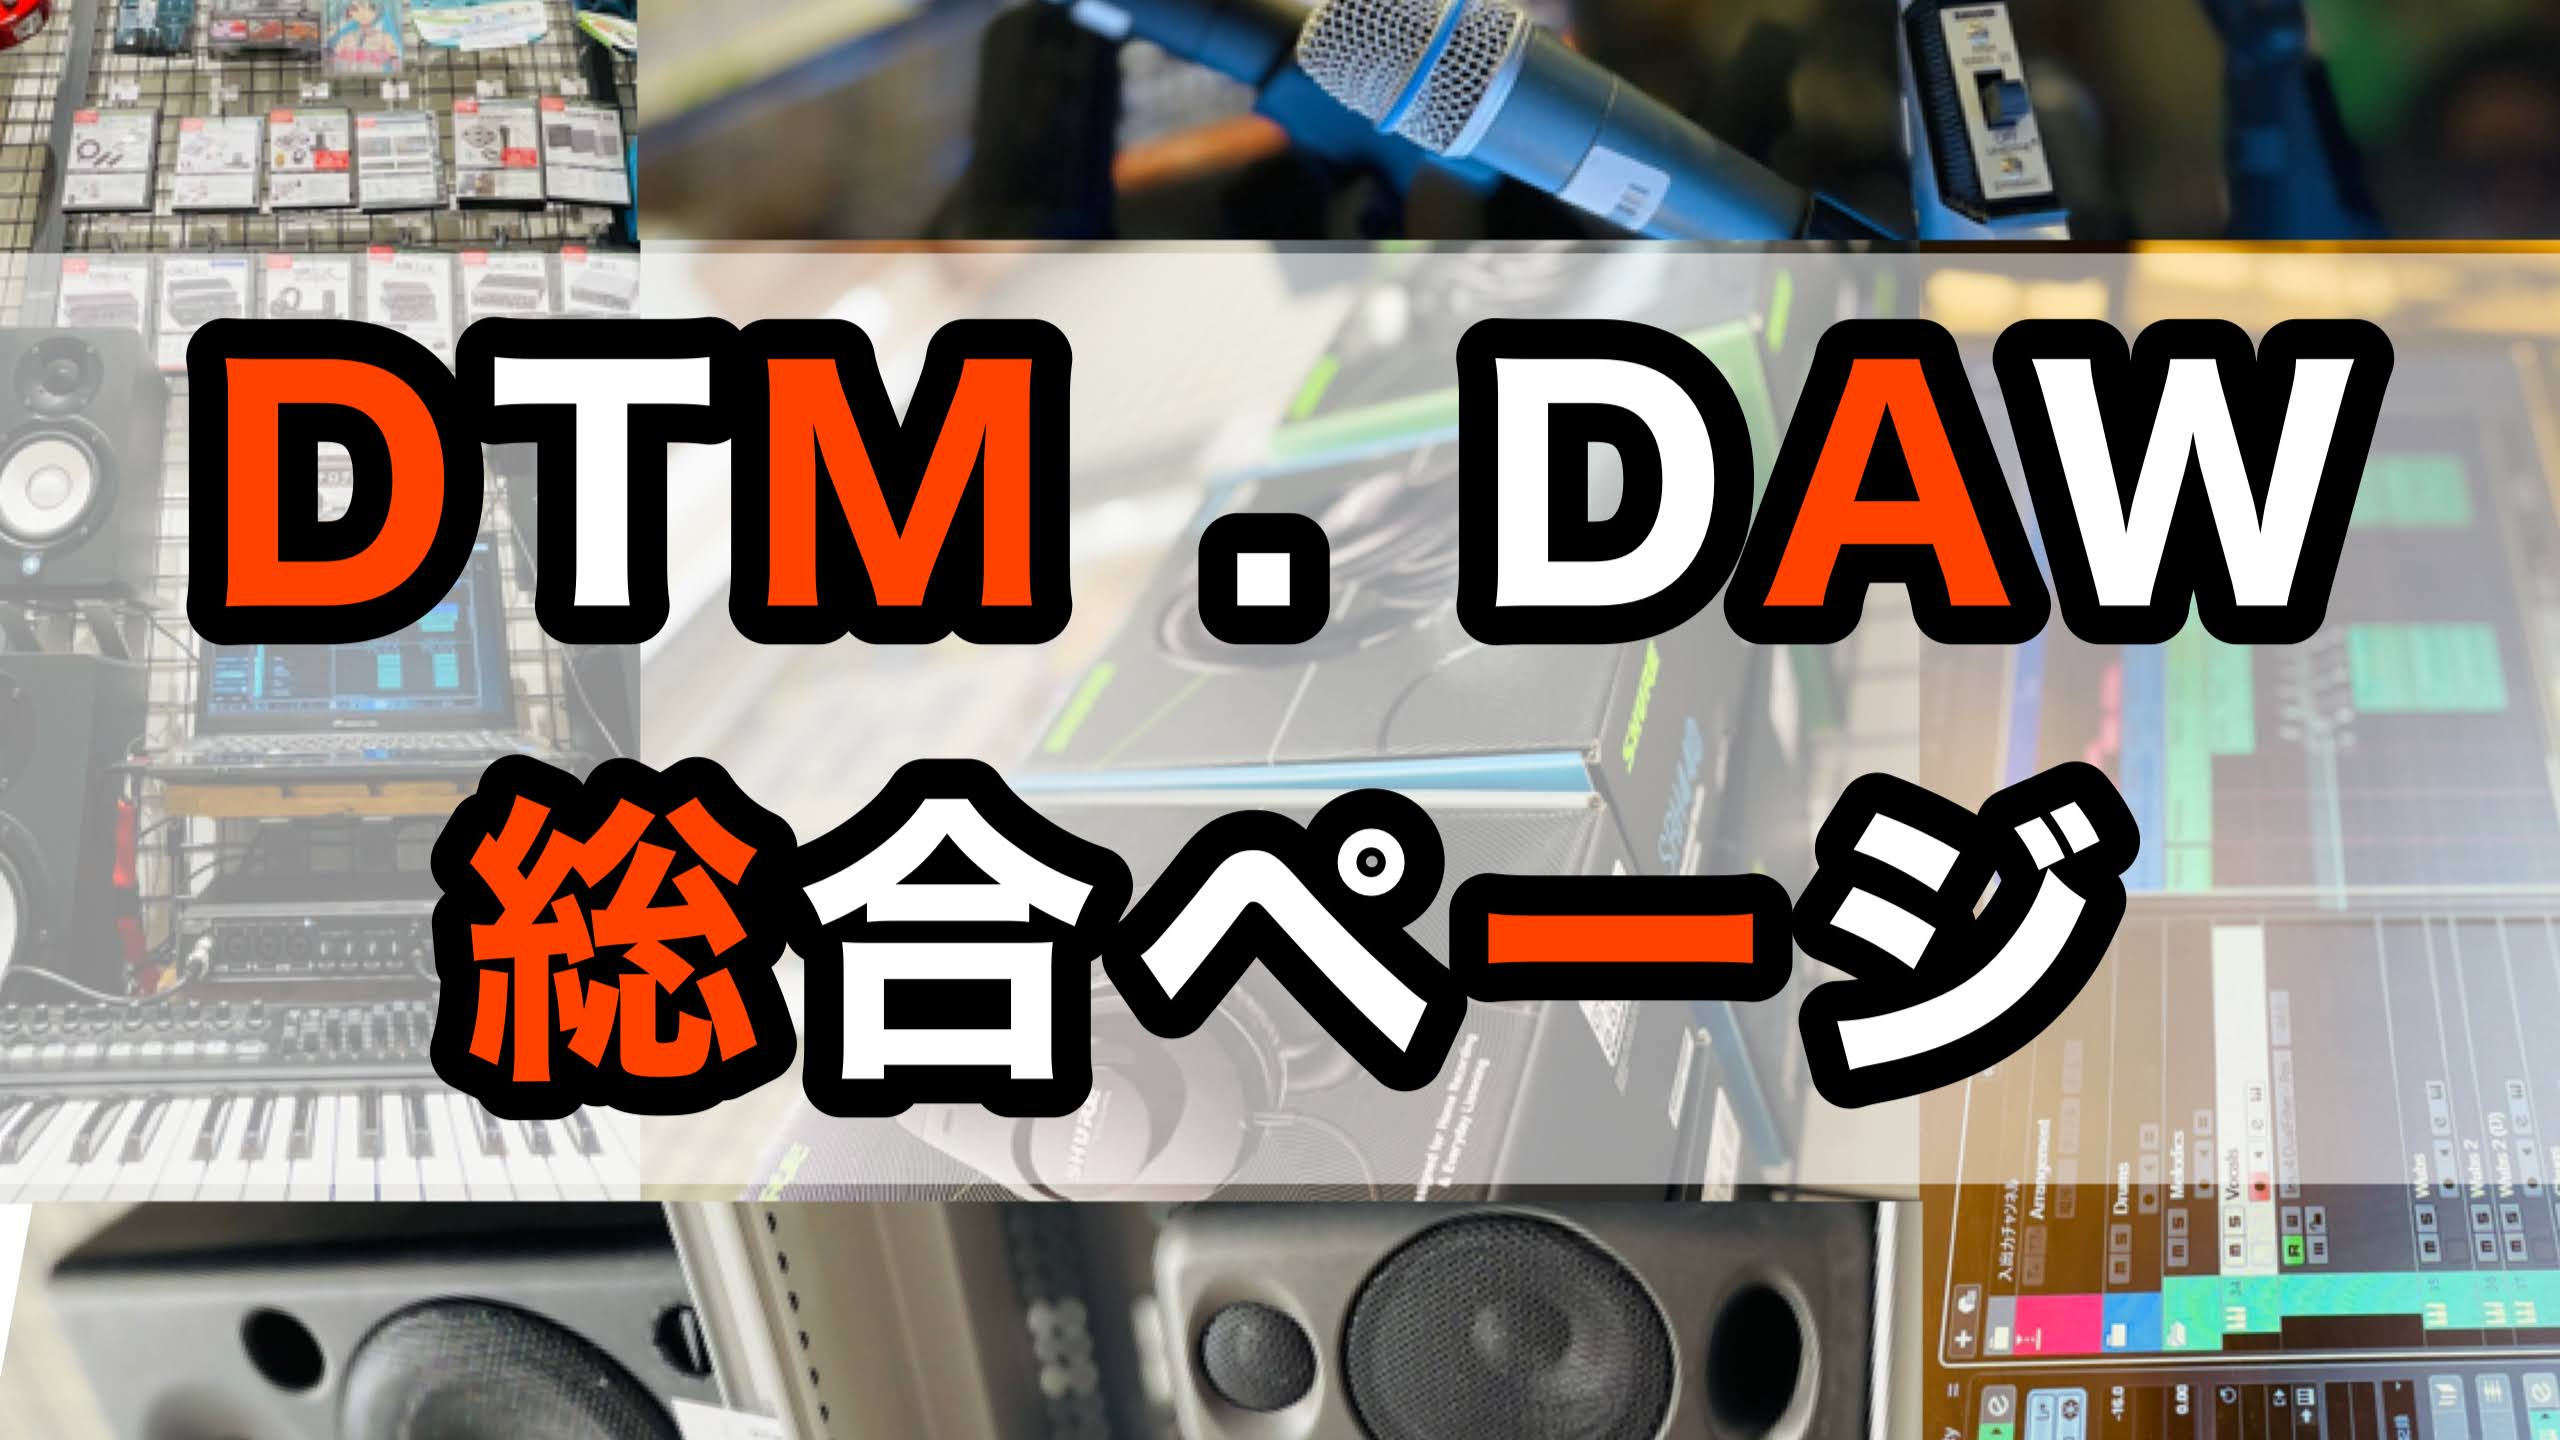 【DTM総合】DTM・DAWのことなら島村楽器橿原店へGO!